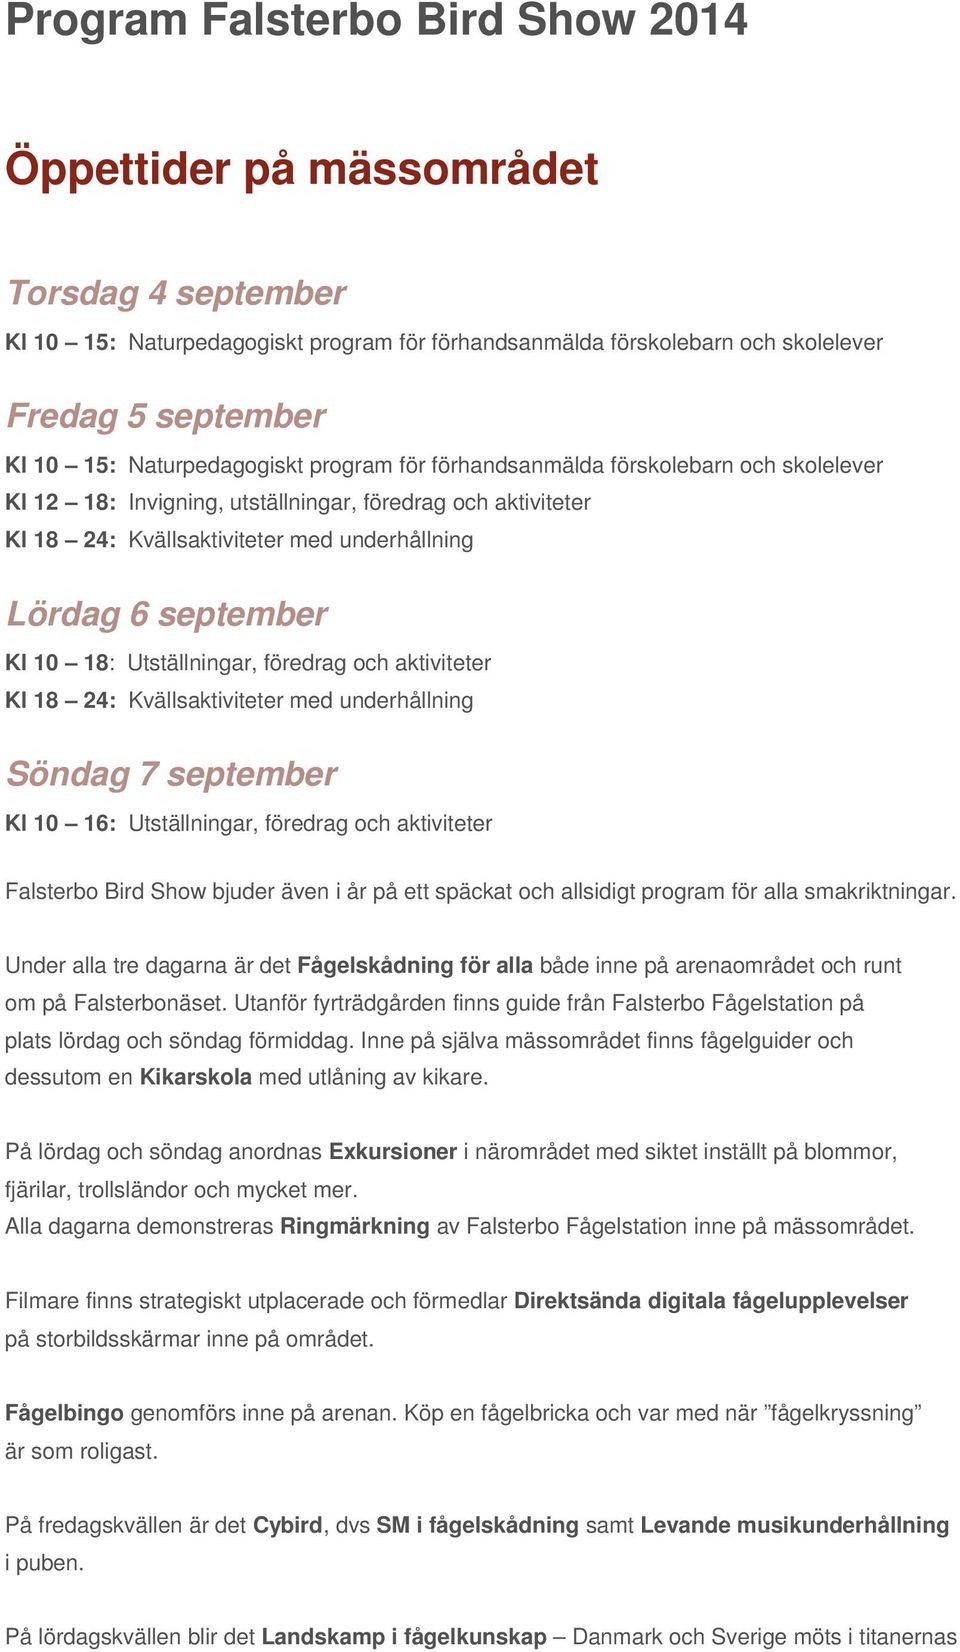 Kl 10 18: Utställningar, föredrag och aktiviteter Kl 18 24: Kvällsaktiviteter med underhållning Söndag 7 september Kl 10 16: Utställningar, föredrag och aktiviteter Falsterbo Bird Show bjuder även i